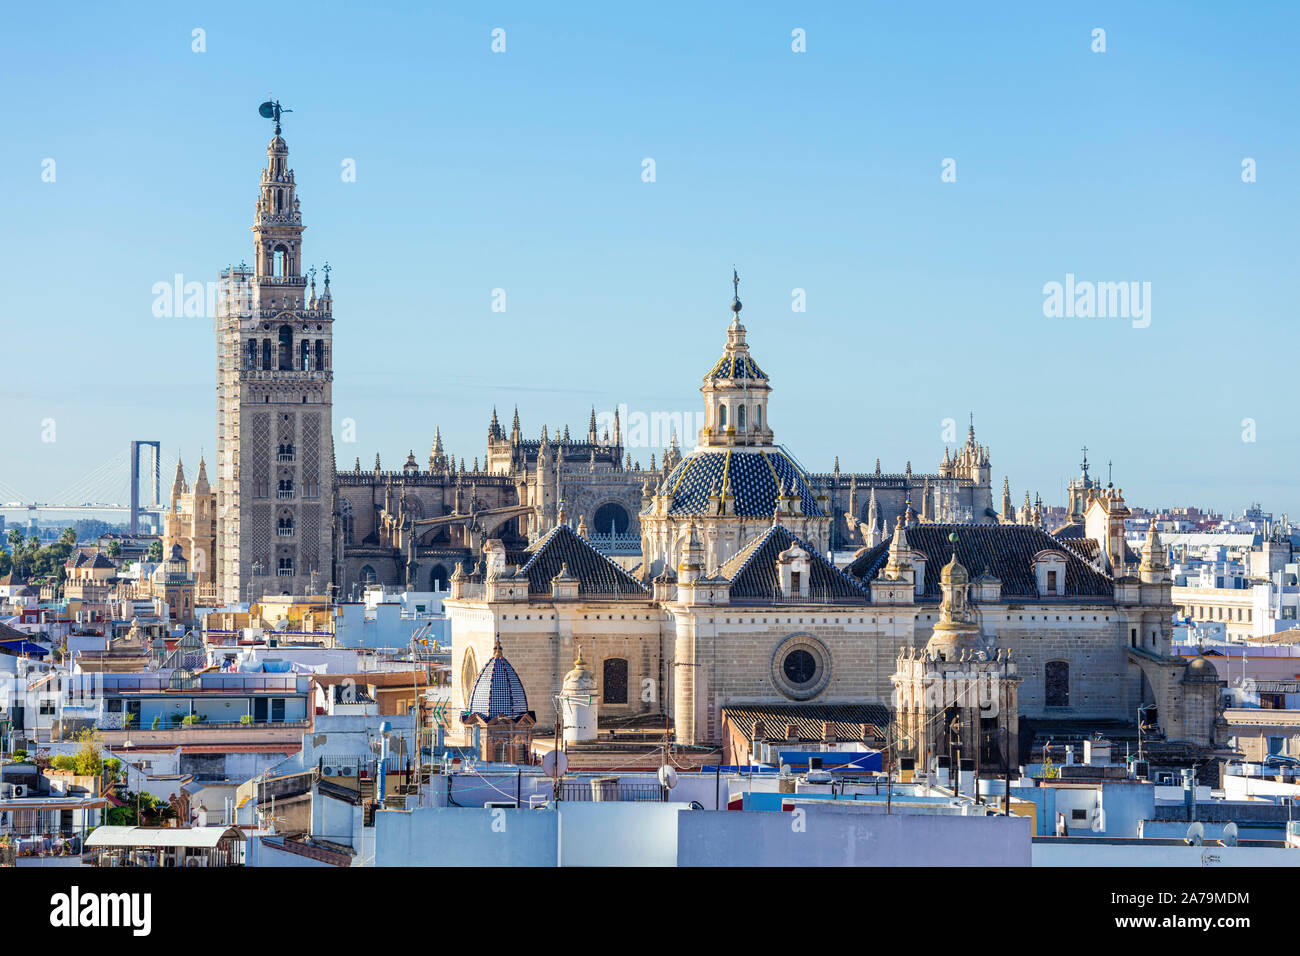 Blick auf die Skyline von Sevilla die Kathedrale von Sevilla La Giralda Glockenturm und Dächer der Stadt Sevilla Spanien Sevilla Andalusien Spanien EU Europa Stockfoto